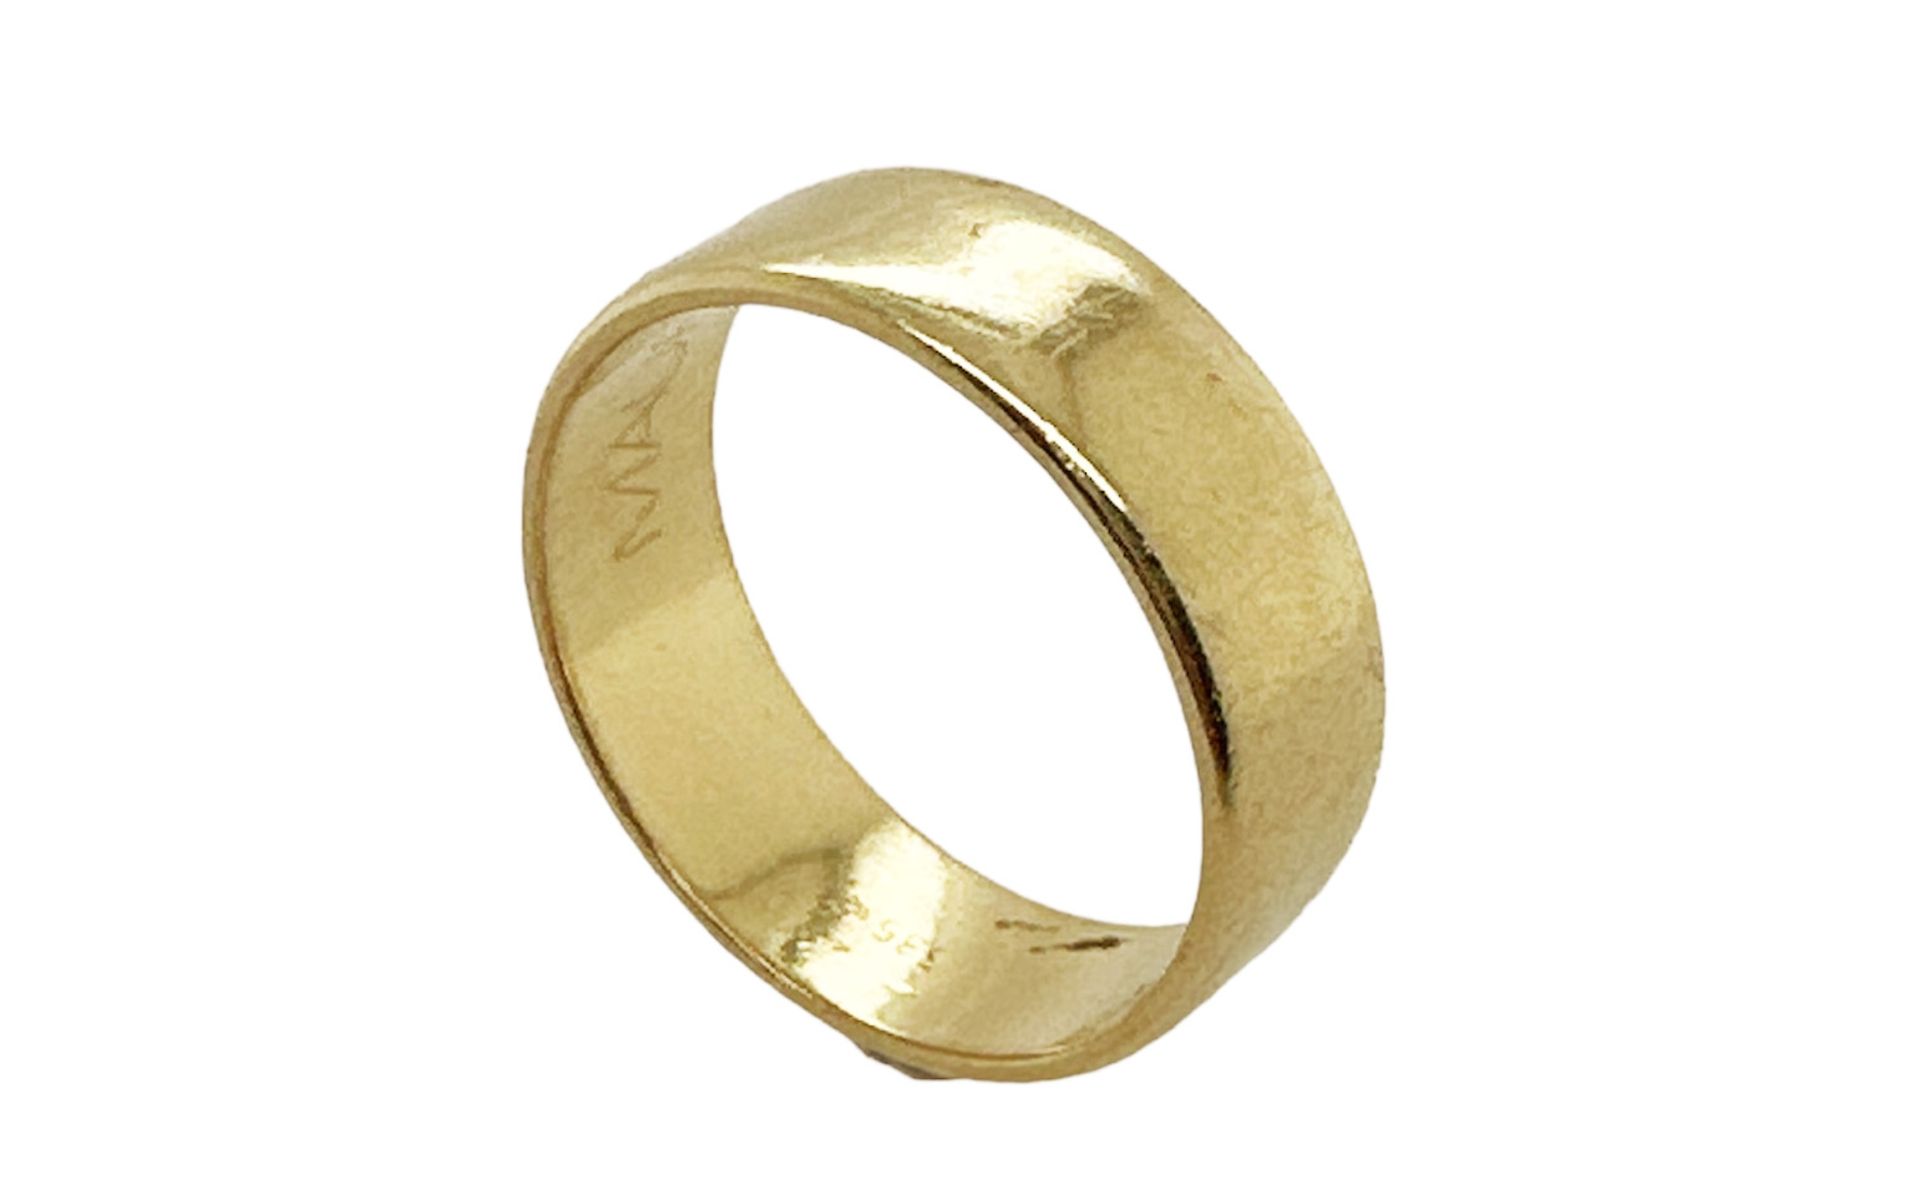 Ring 6,55g 585/- Gelbgold, Ringgröße ca. 62, mit Gravur